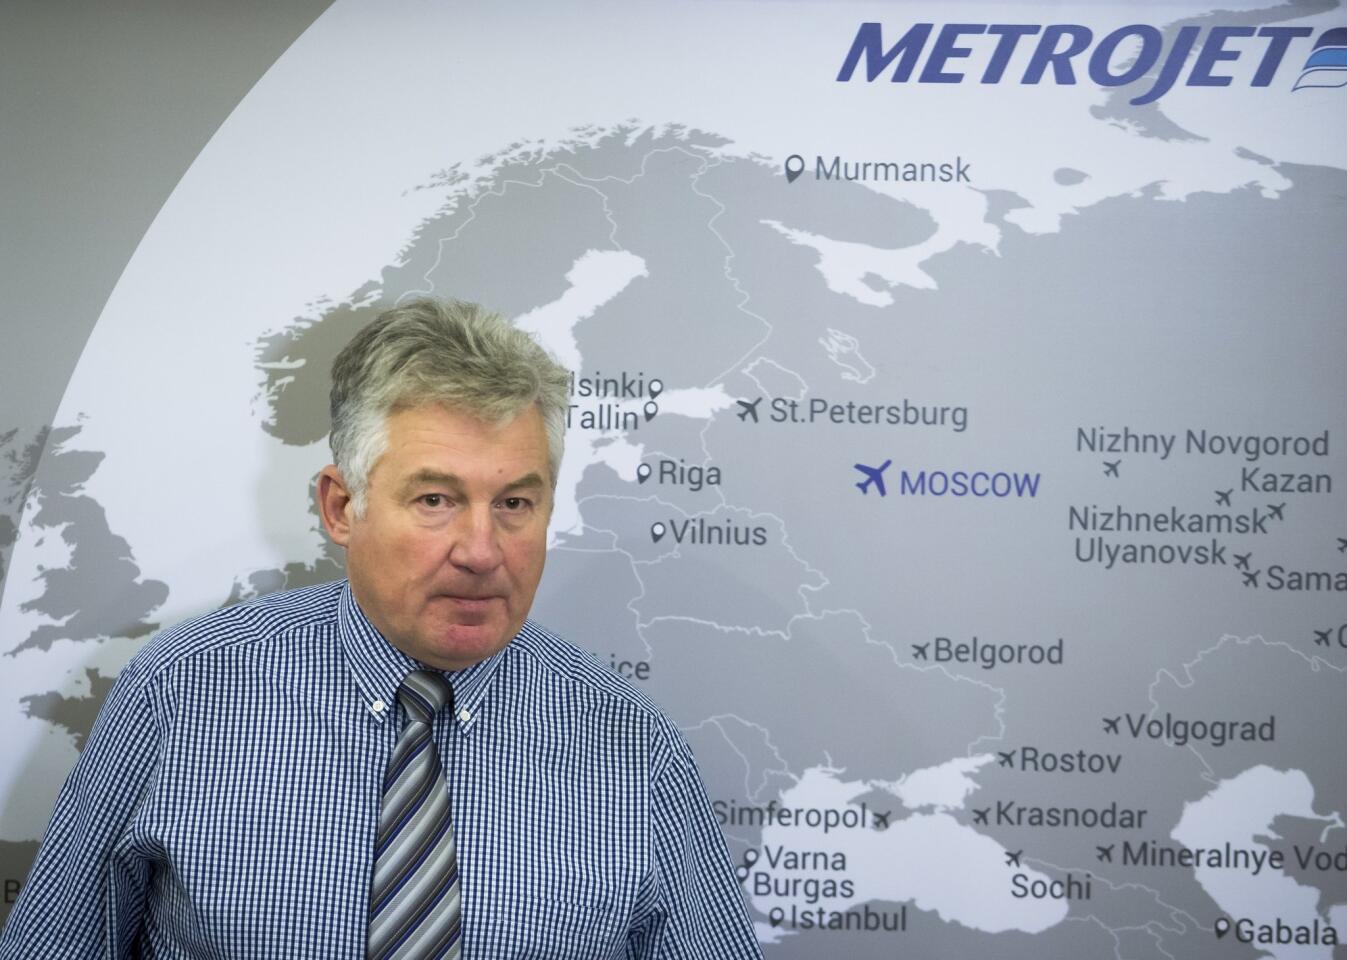 Metrojet briefing